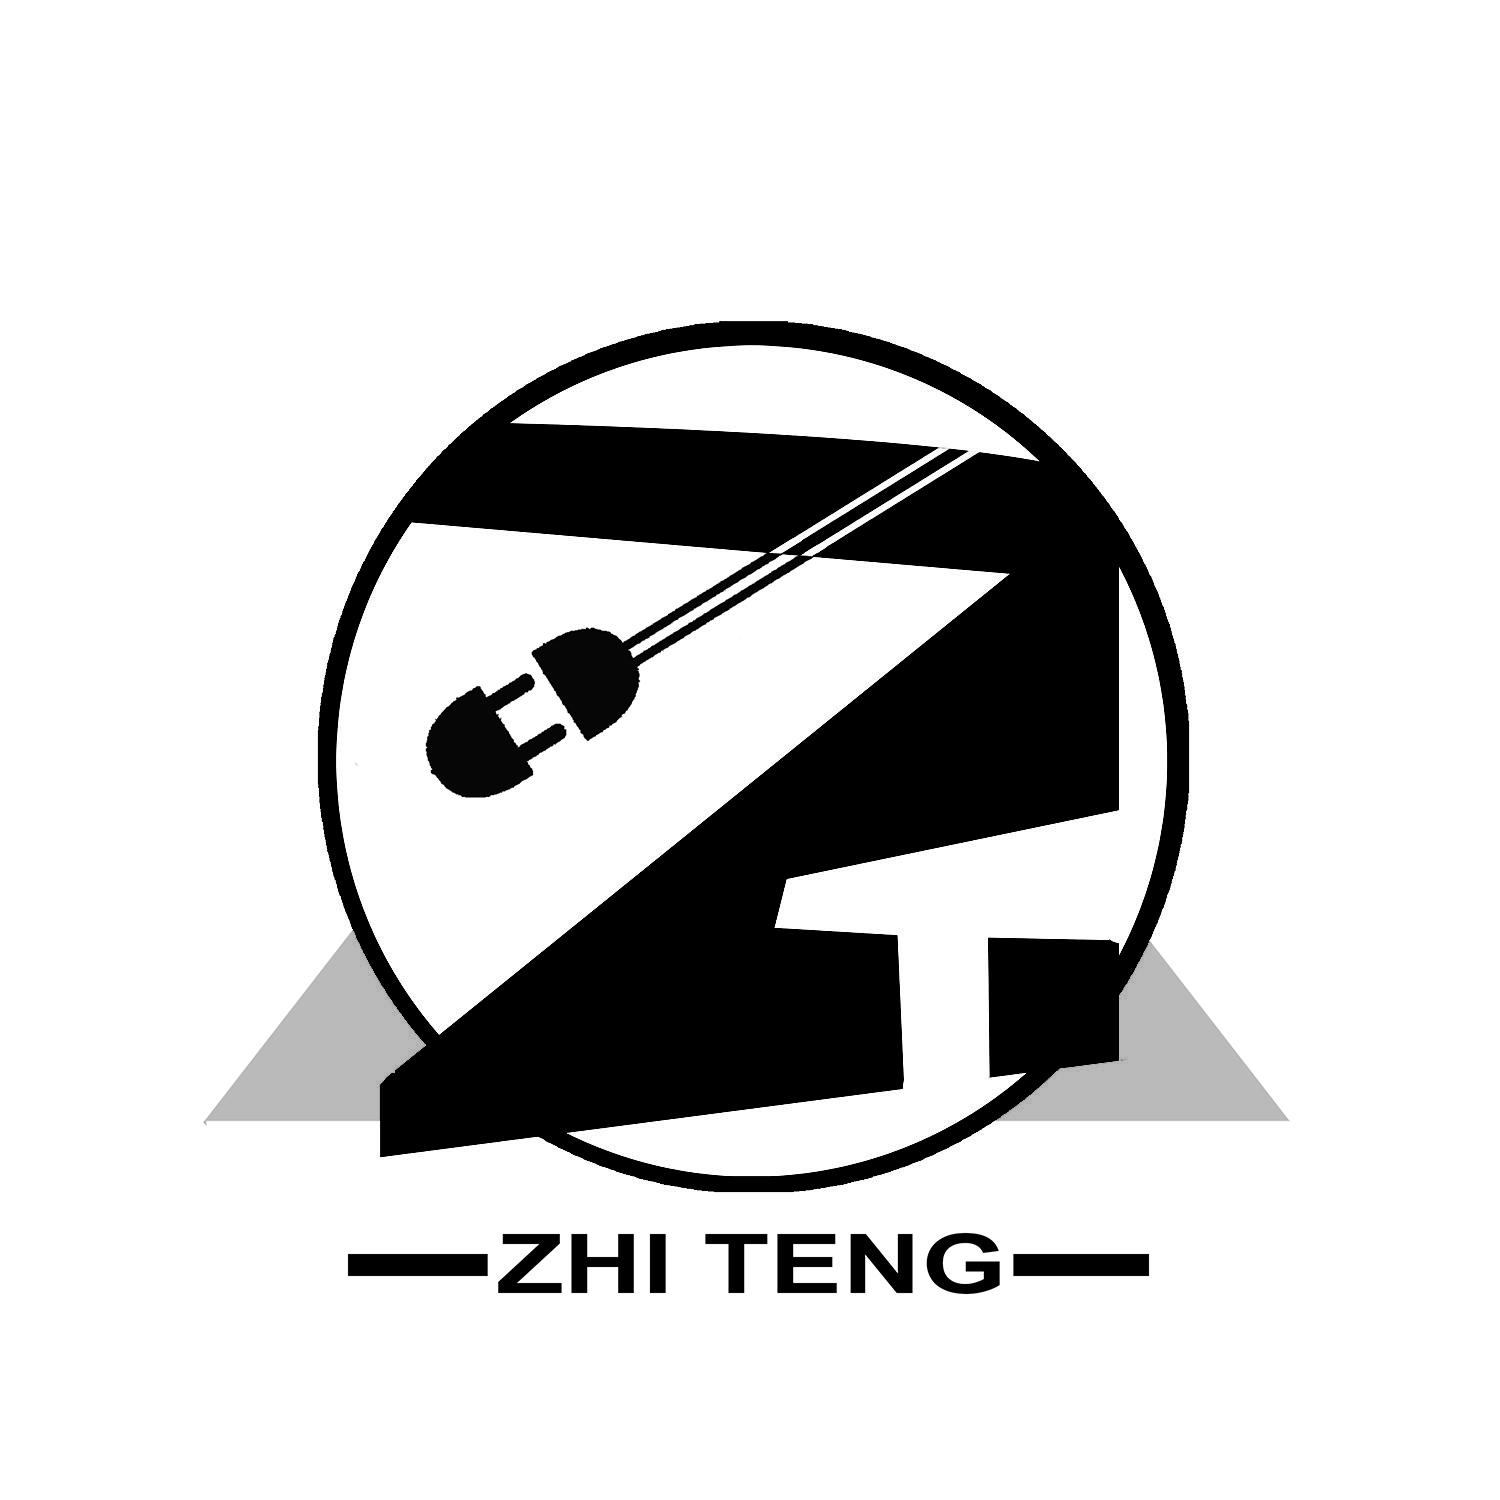 ZHI TENG